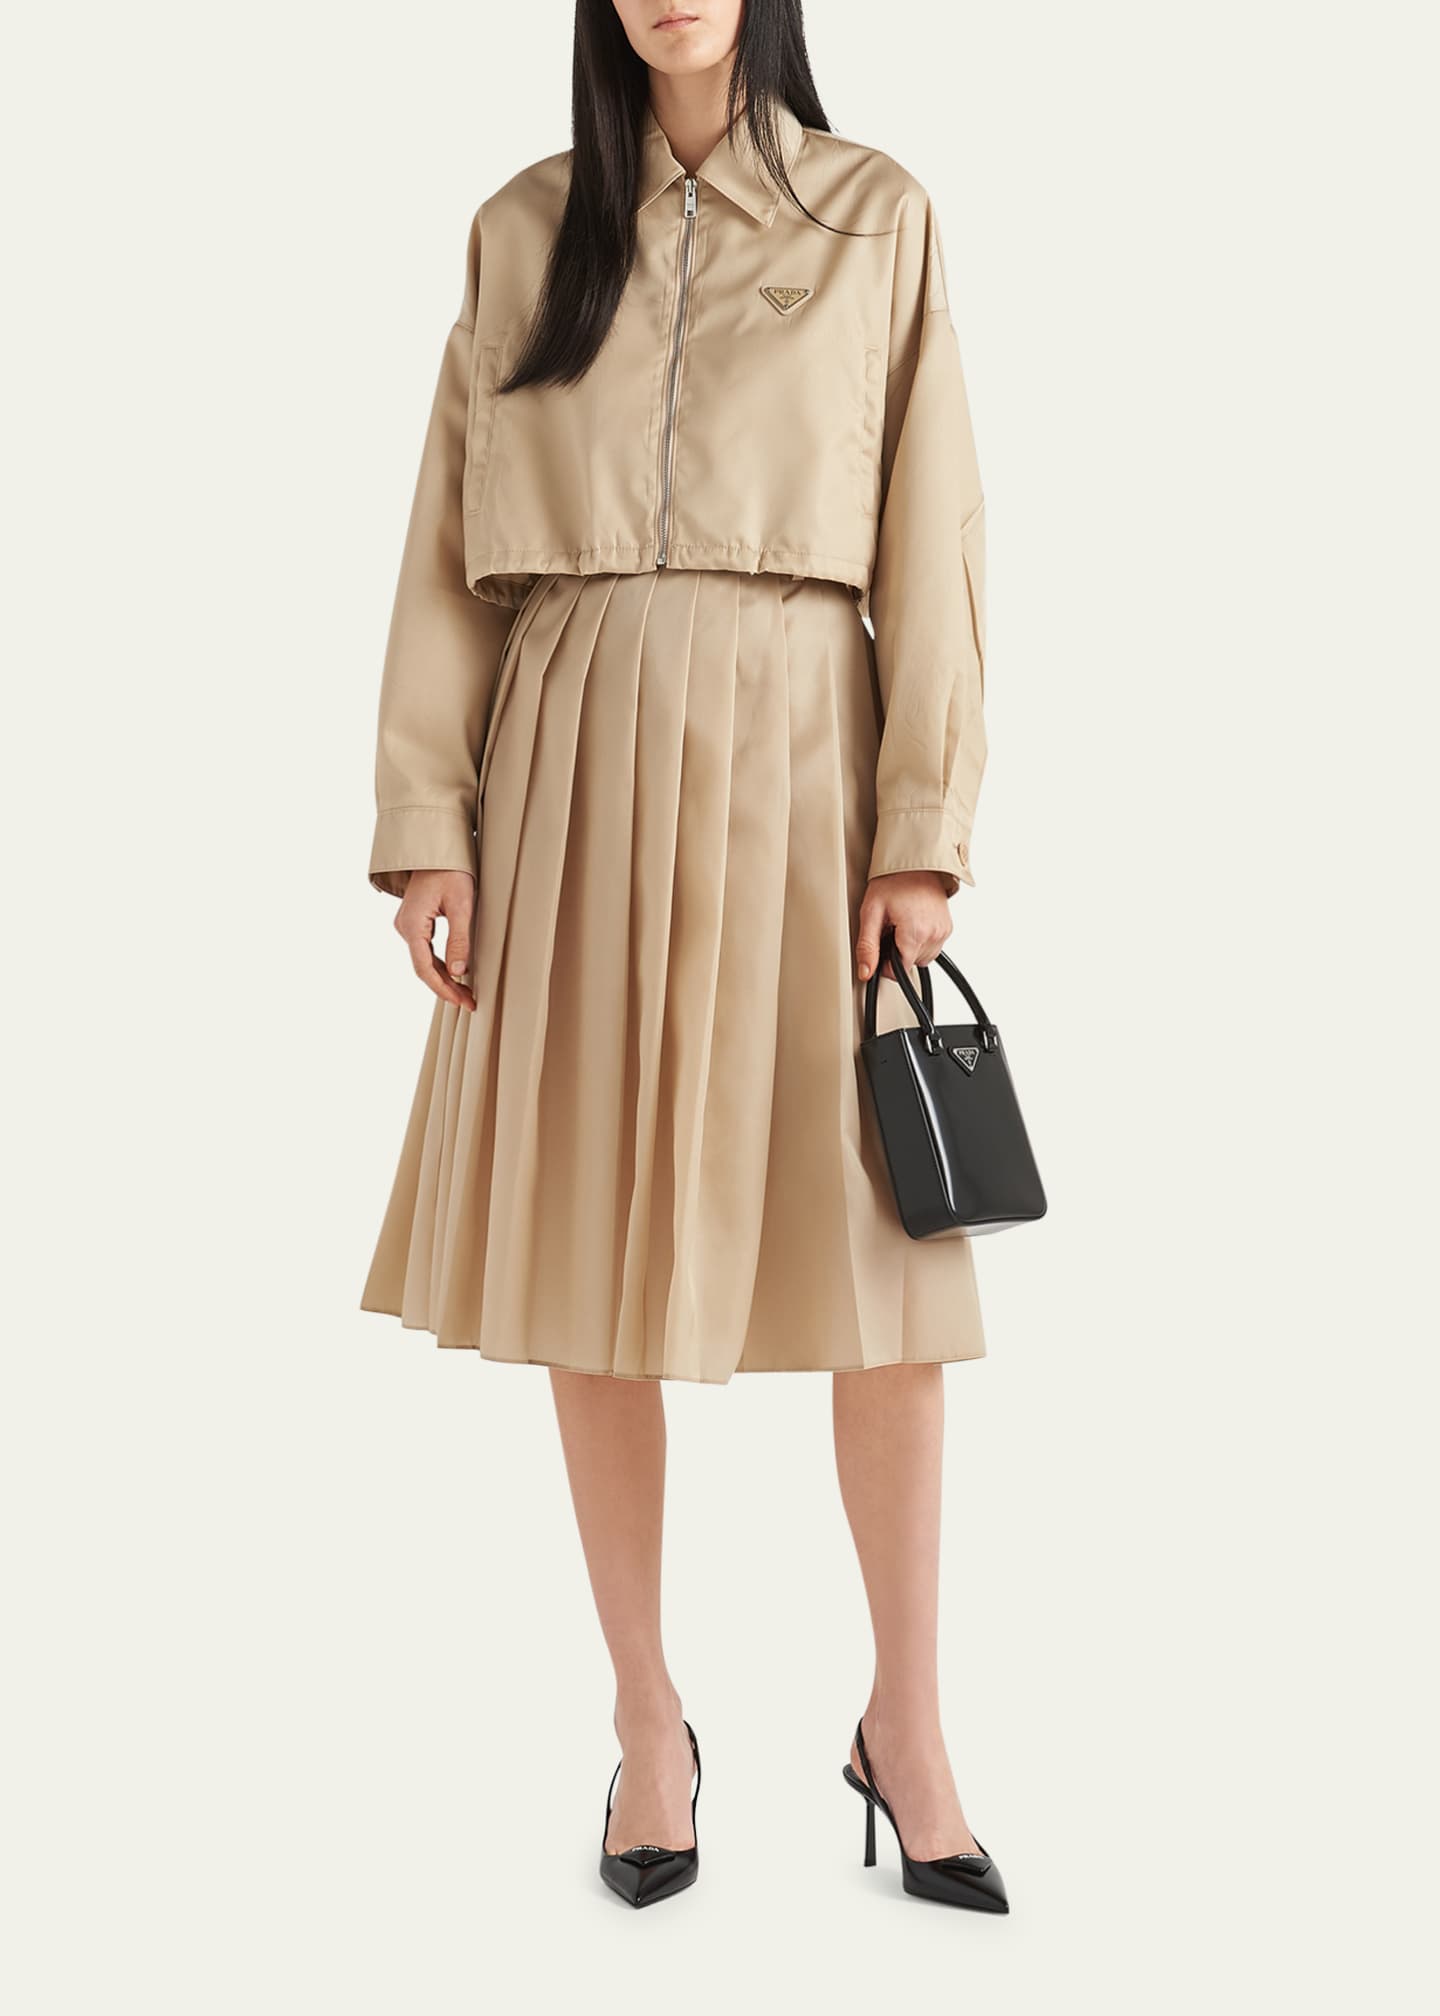 Prada Re-Nylon Pleated Skirt - Bergdorf Goodman